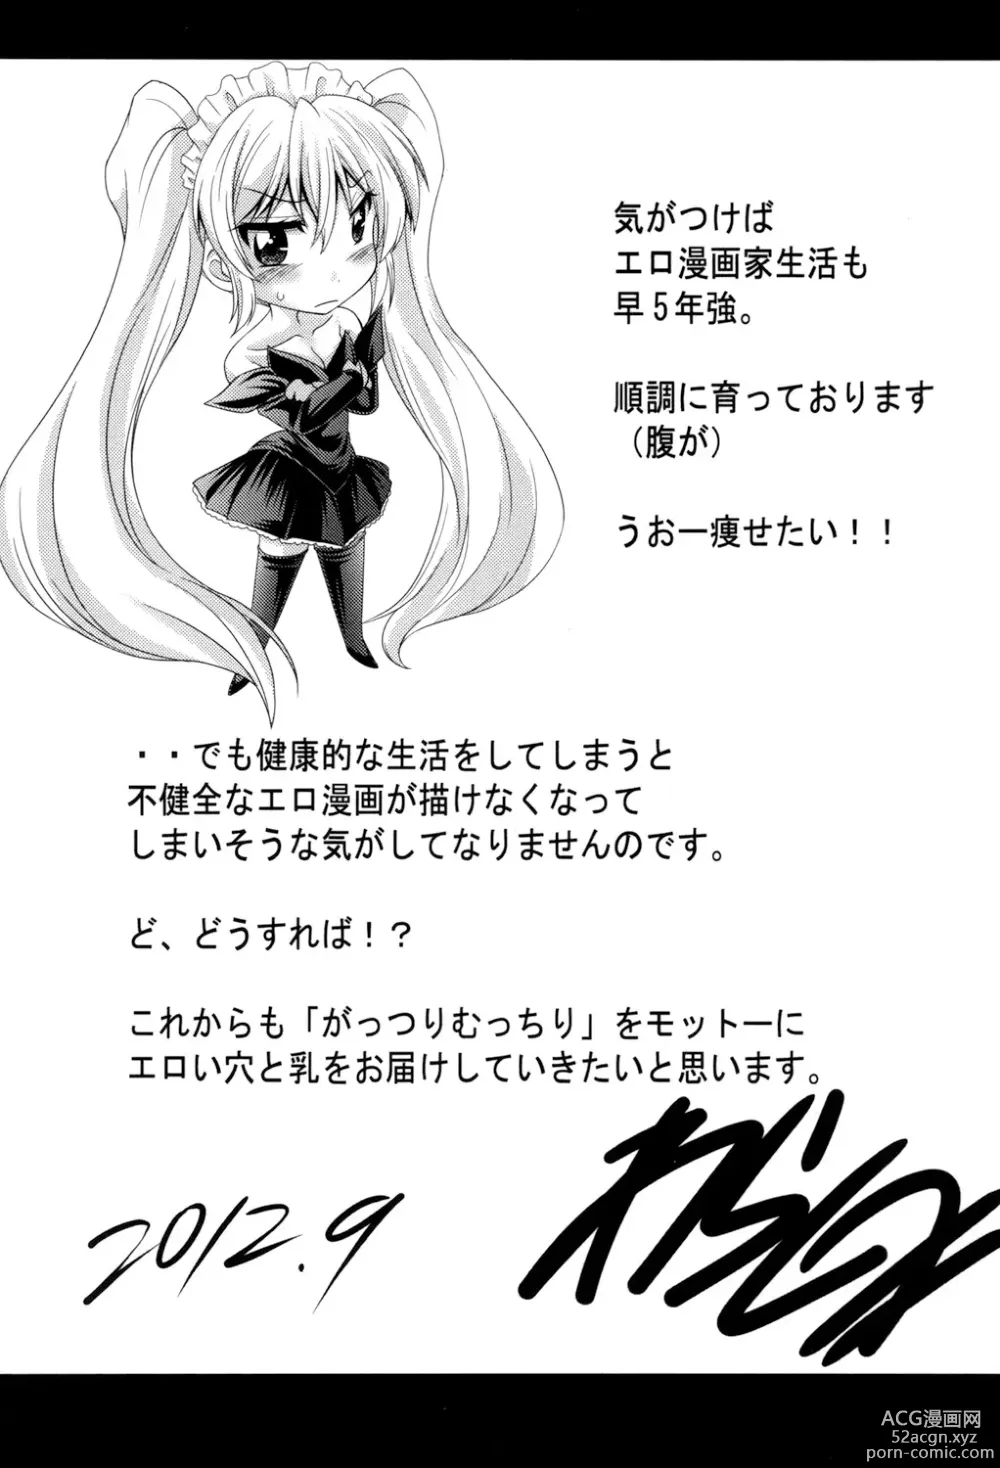 Page 197 of manga Class YoMaid